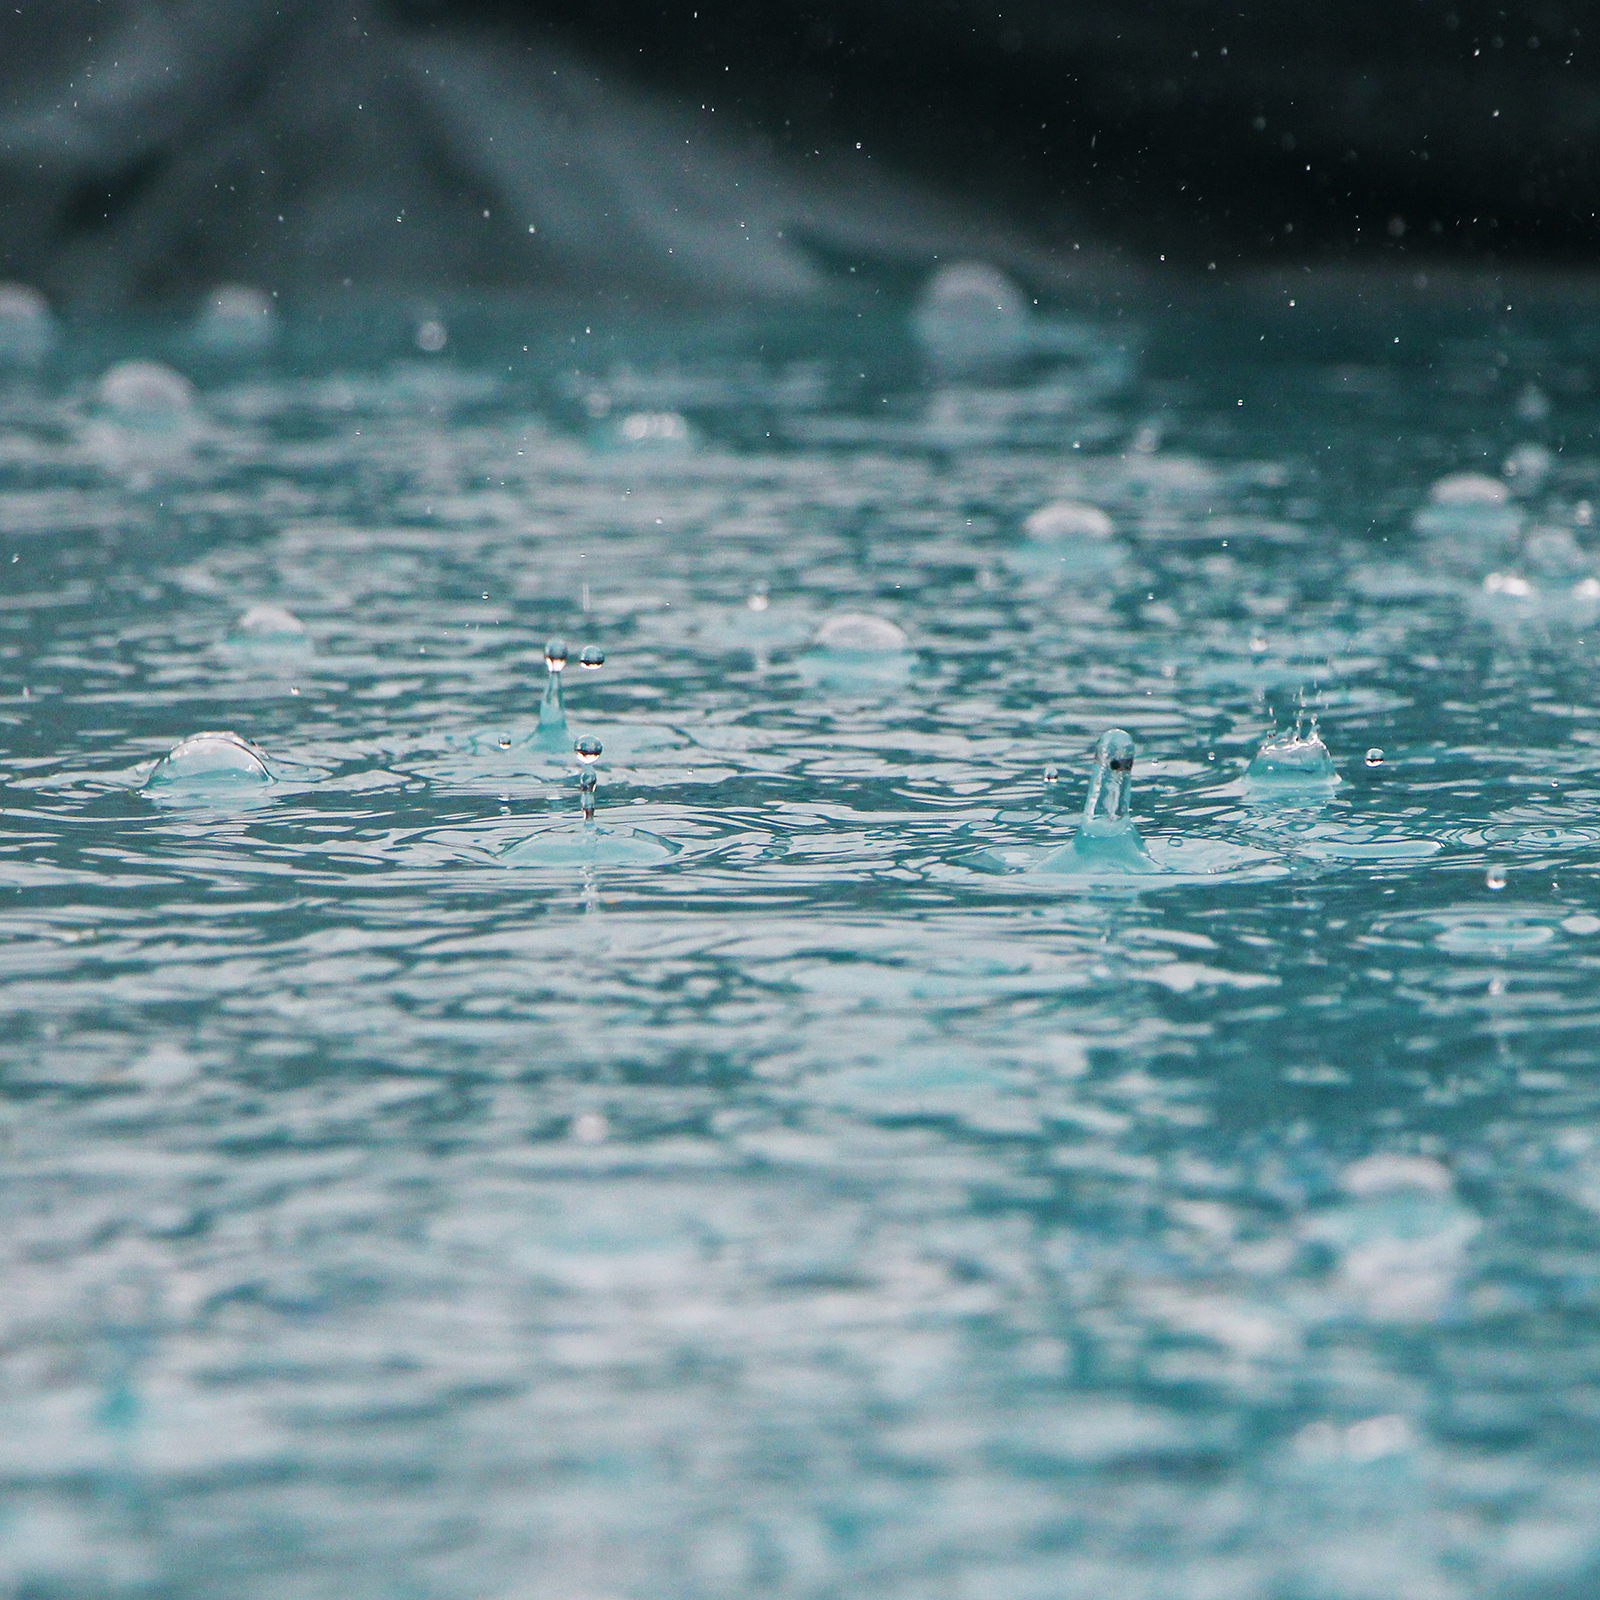 rain falling in pool water